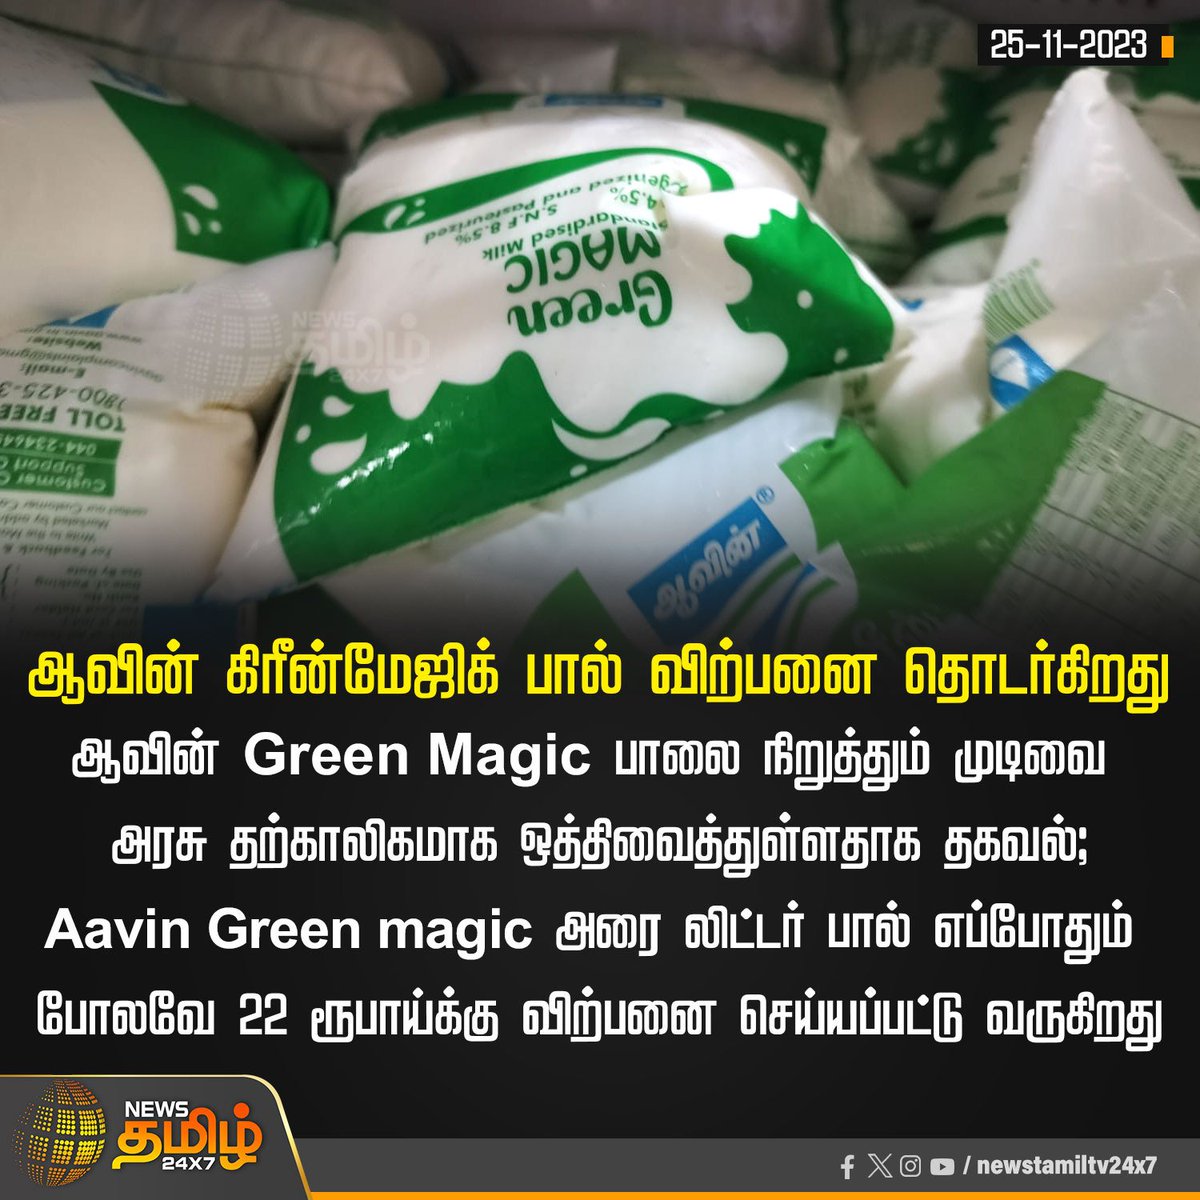 #JUSTIN

ஆவின் கிரீன்மேஜிக் பால் விற்பனை தொடர்கிறது

#Aavin | #MilkProducts | #GreenMagic | #TNGovt | #NewsTamil24x7